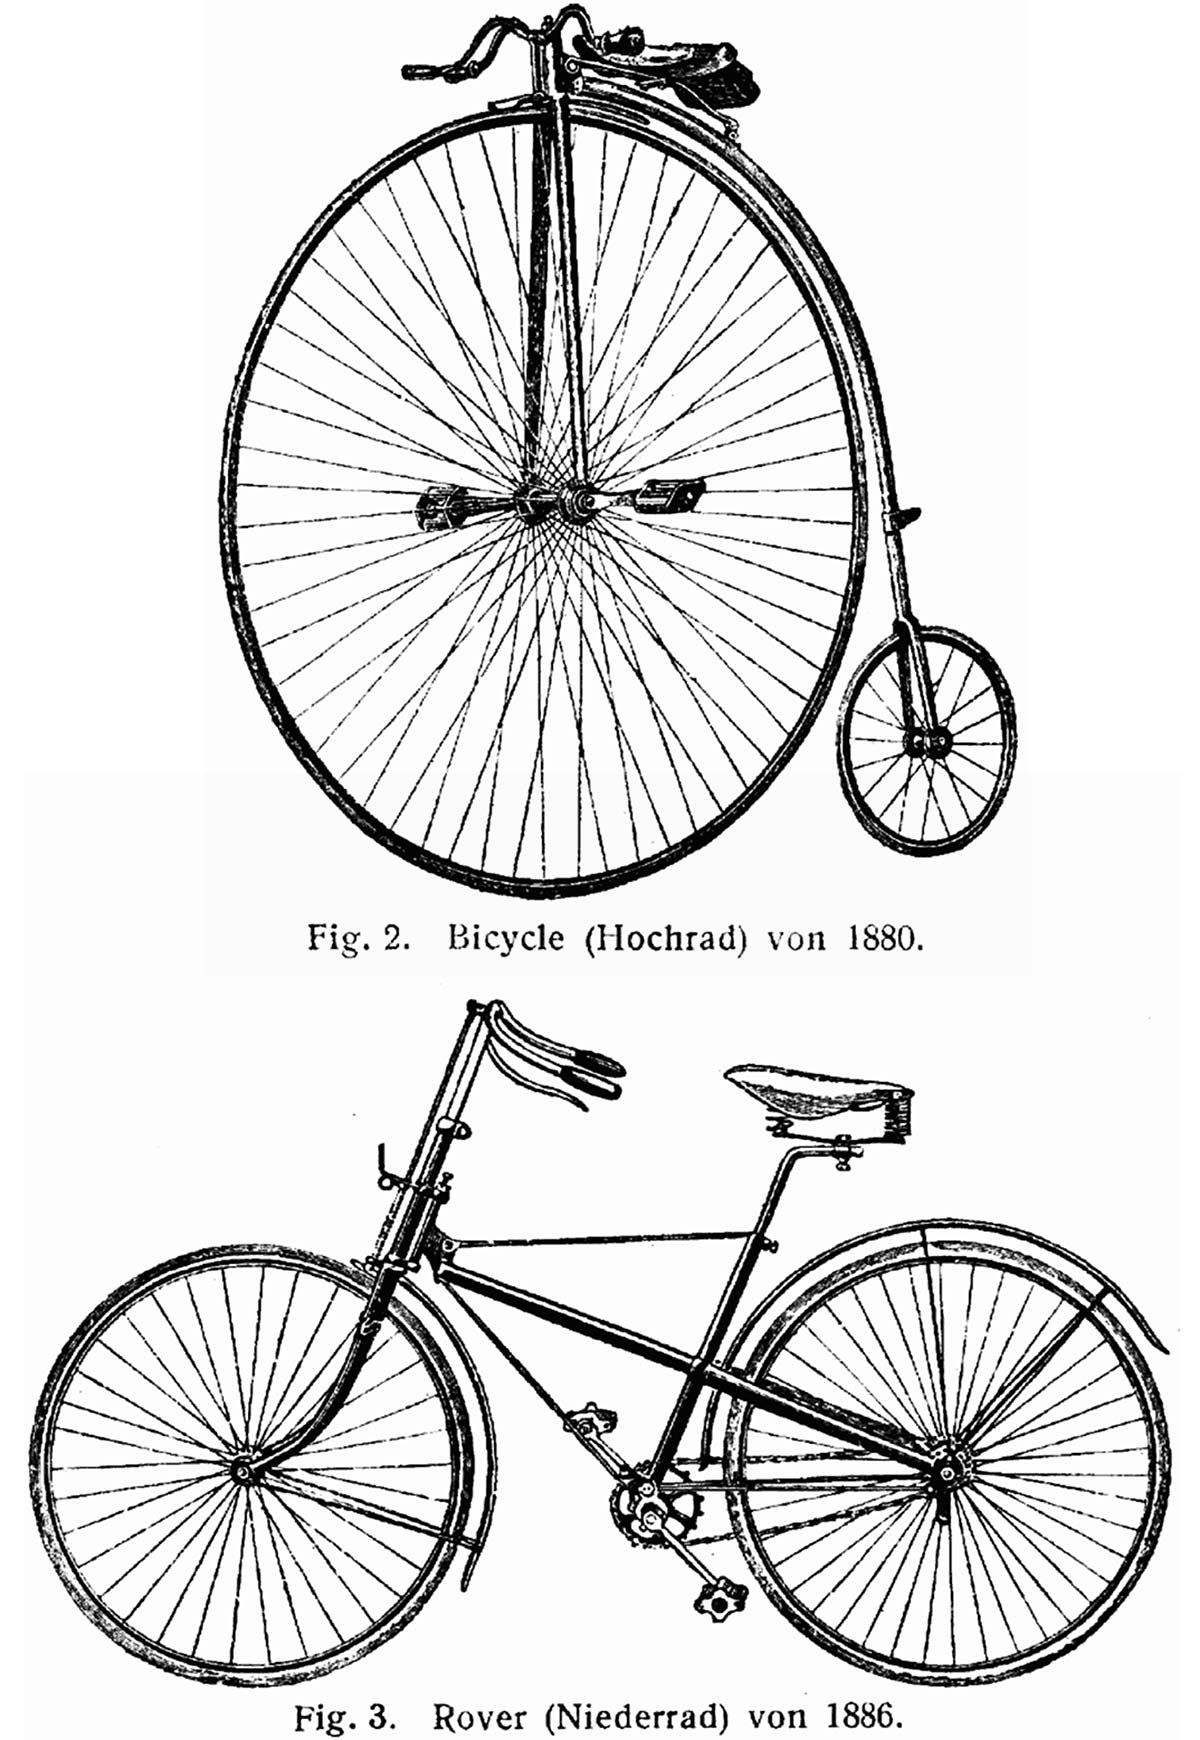 En TodoMountainBike: ¿Por qué las bicicletas llevan la transmisión en el lado derecho? Un poco de historia